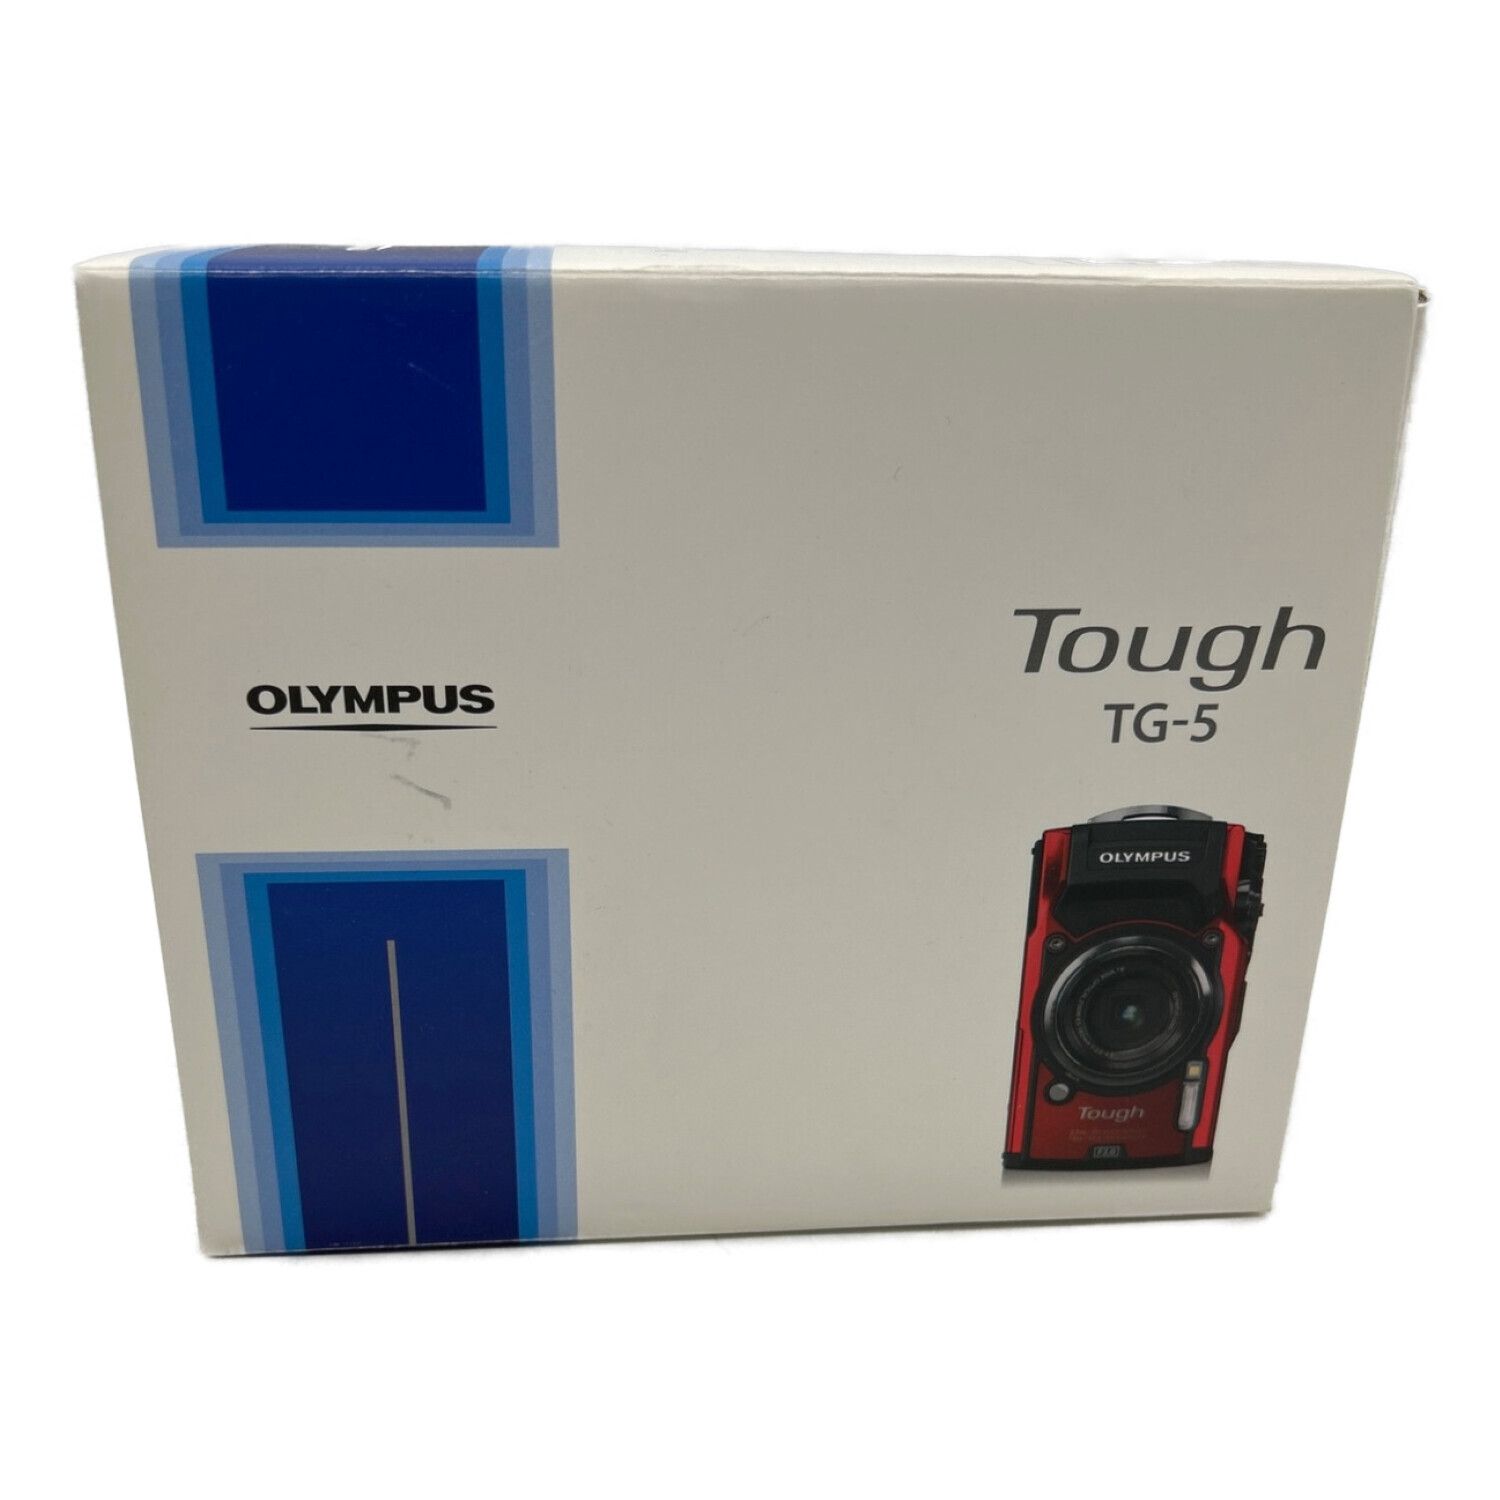 OLYMPUS (オリンパス) コンパクトデジタルカメラ ブラック TG-5